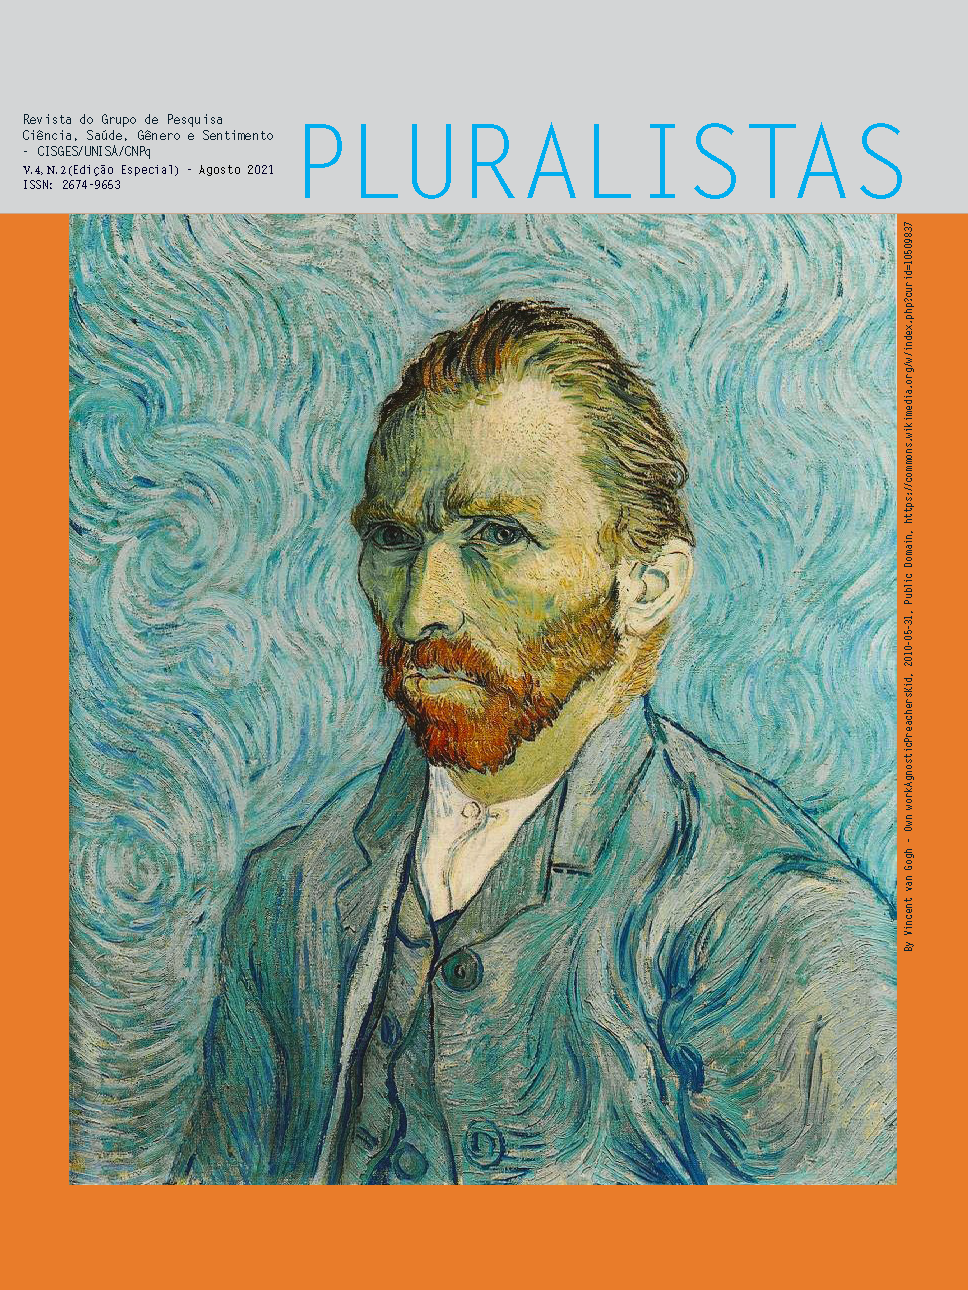 					Visualizar v. 4 n. 2 Edição Especial (2022): Revista Pluralistas - Revista do Grupo de Pesquisa Ciência, Saúde, Gênero e Sentimento - CISGES/UNISA/CNpq
				